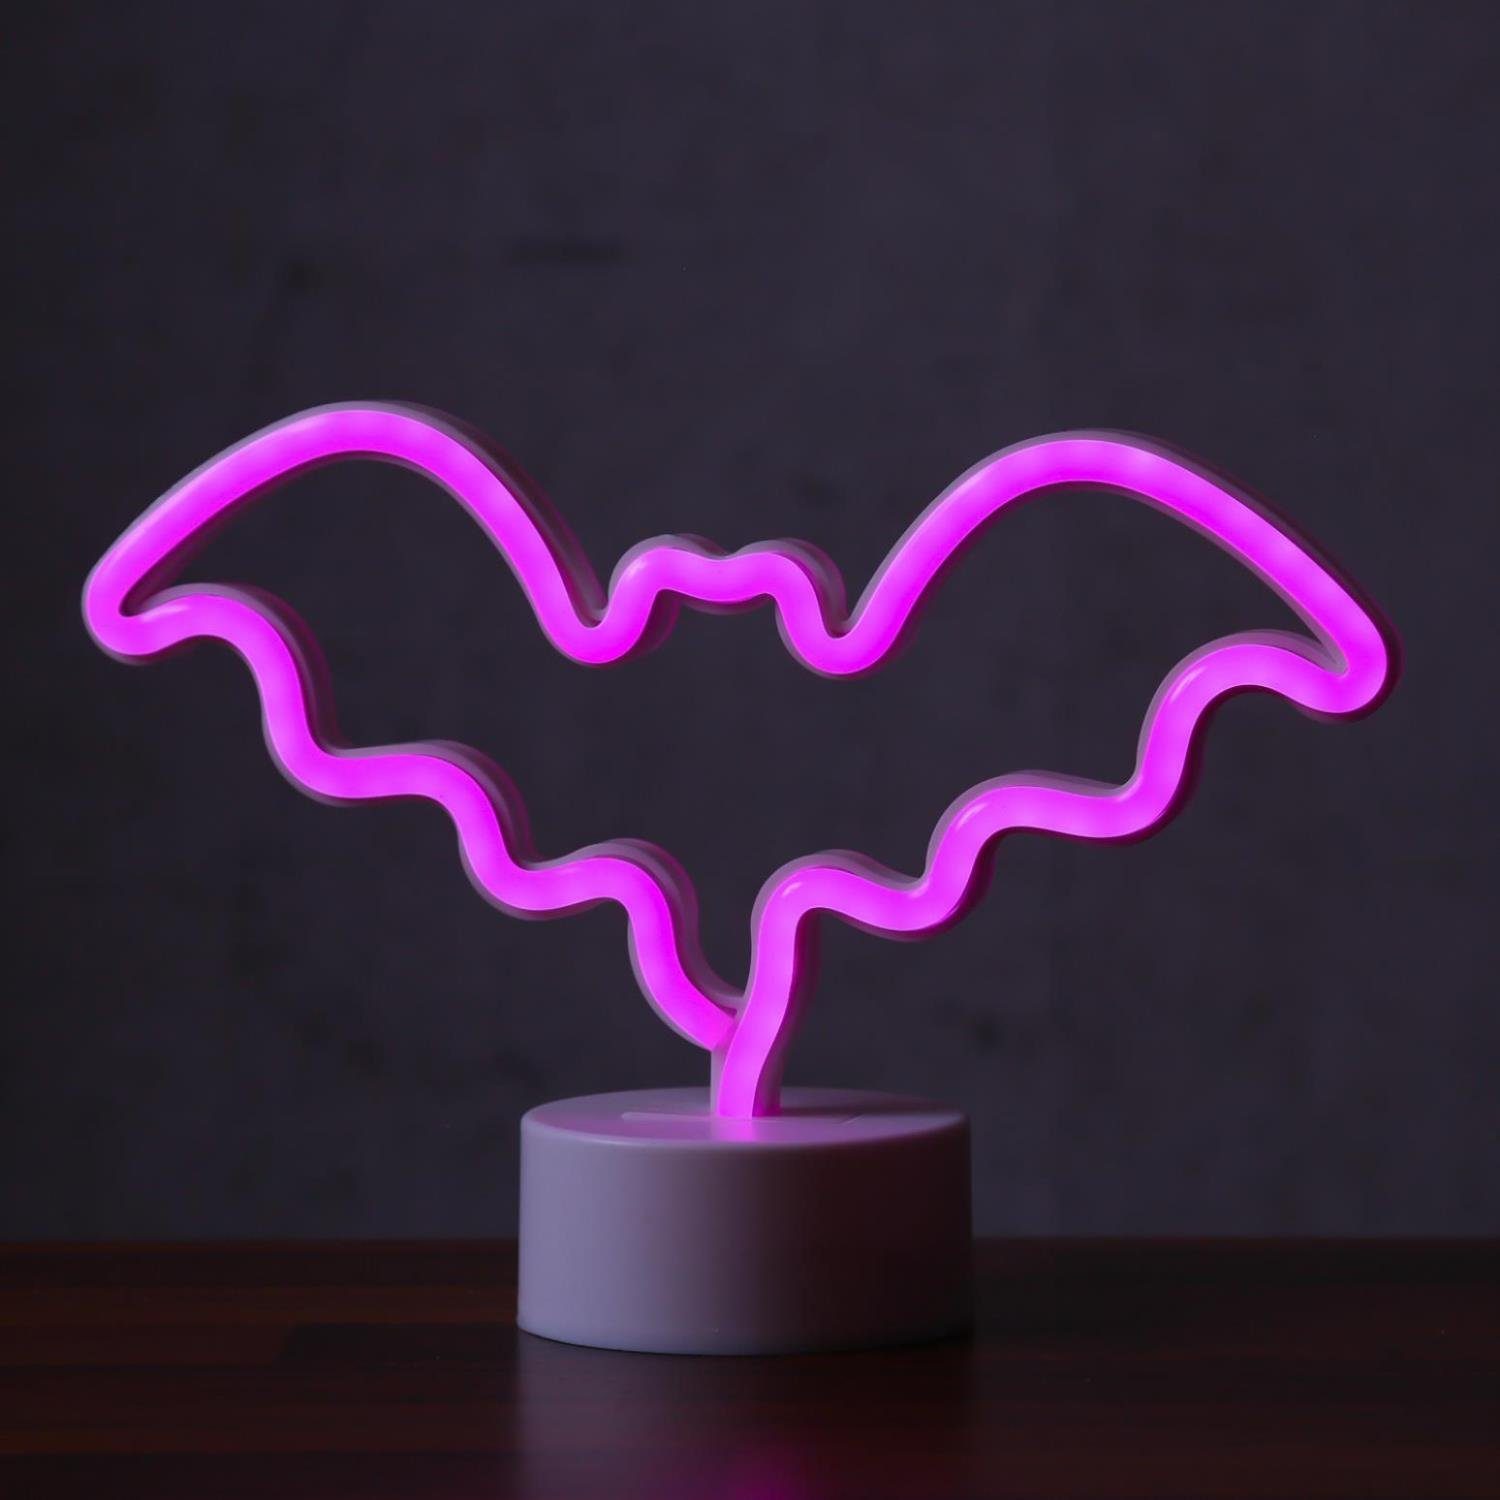 SATISFIRE LED 17cm Fledermaus pink, Dekolicht LED Schild Neonlicht Classic, Leuchtfigur NEON Figur USB pink LED